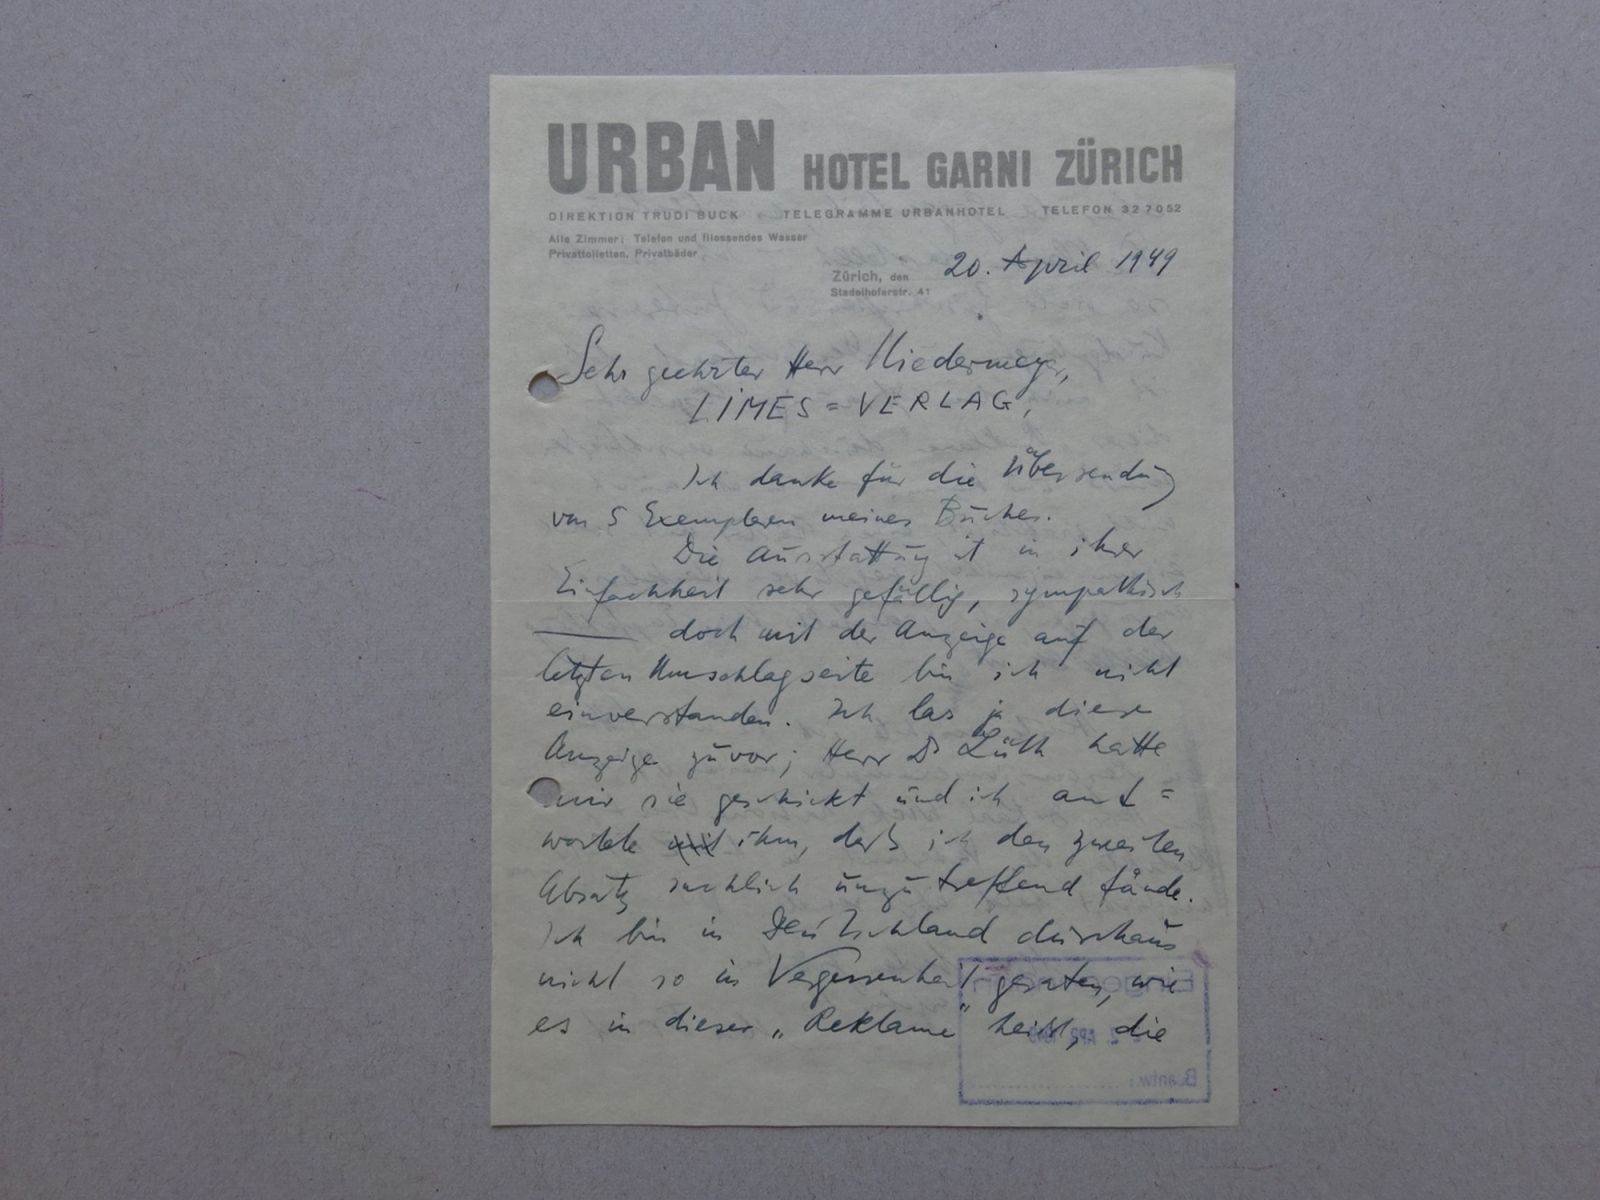 Brod - Brief an Niedermayer 20.4.1949